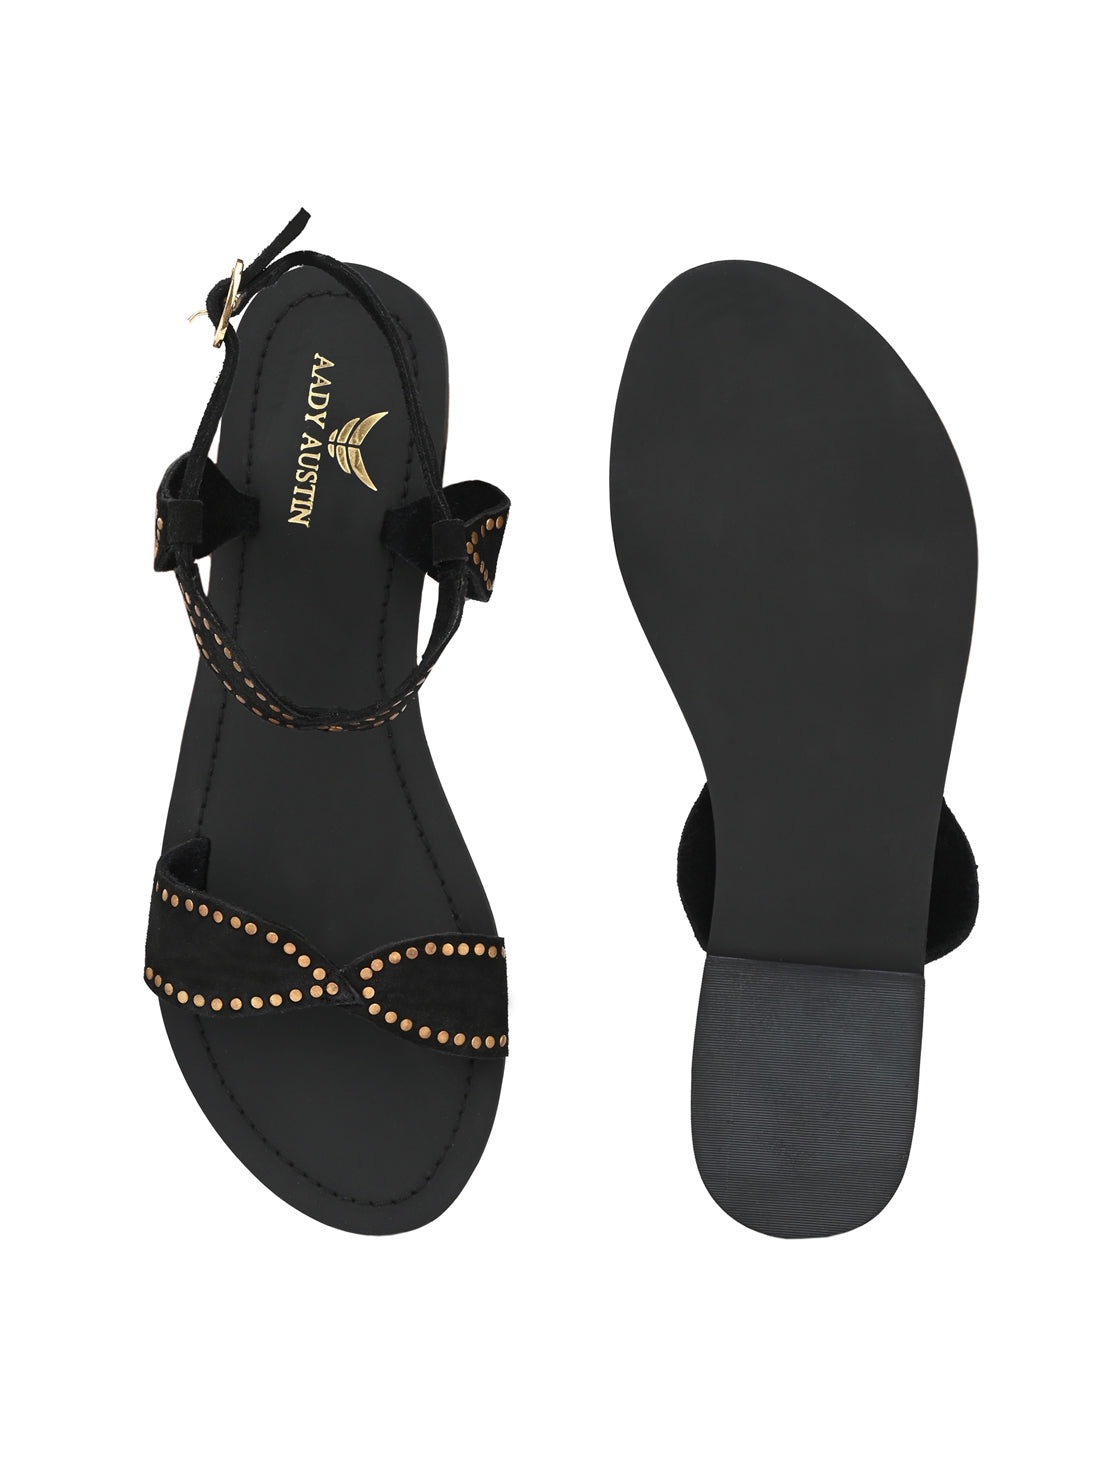 Aady Austin Women Black Open Toe Buckle Flats Sandals (AUSF19074)